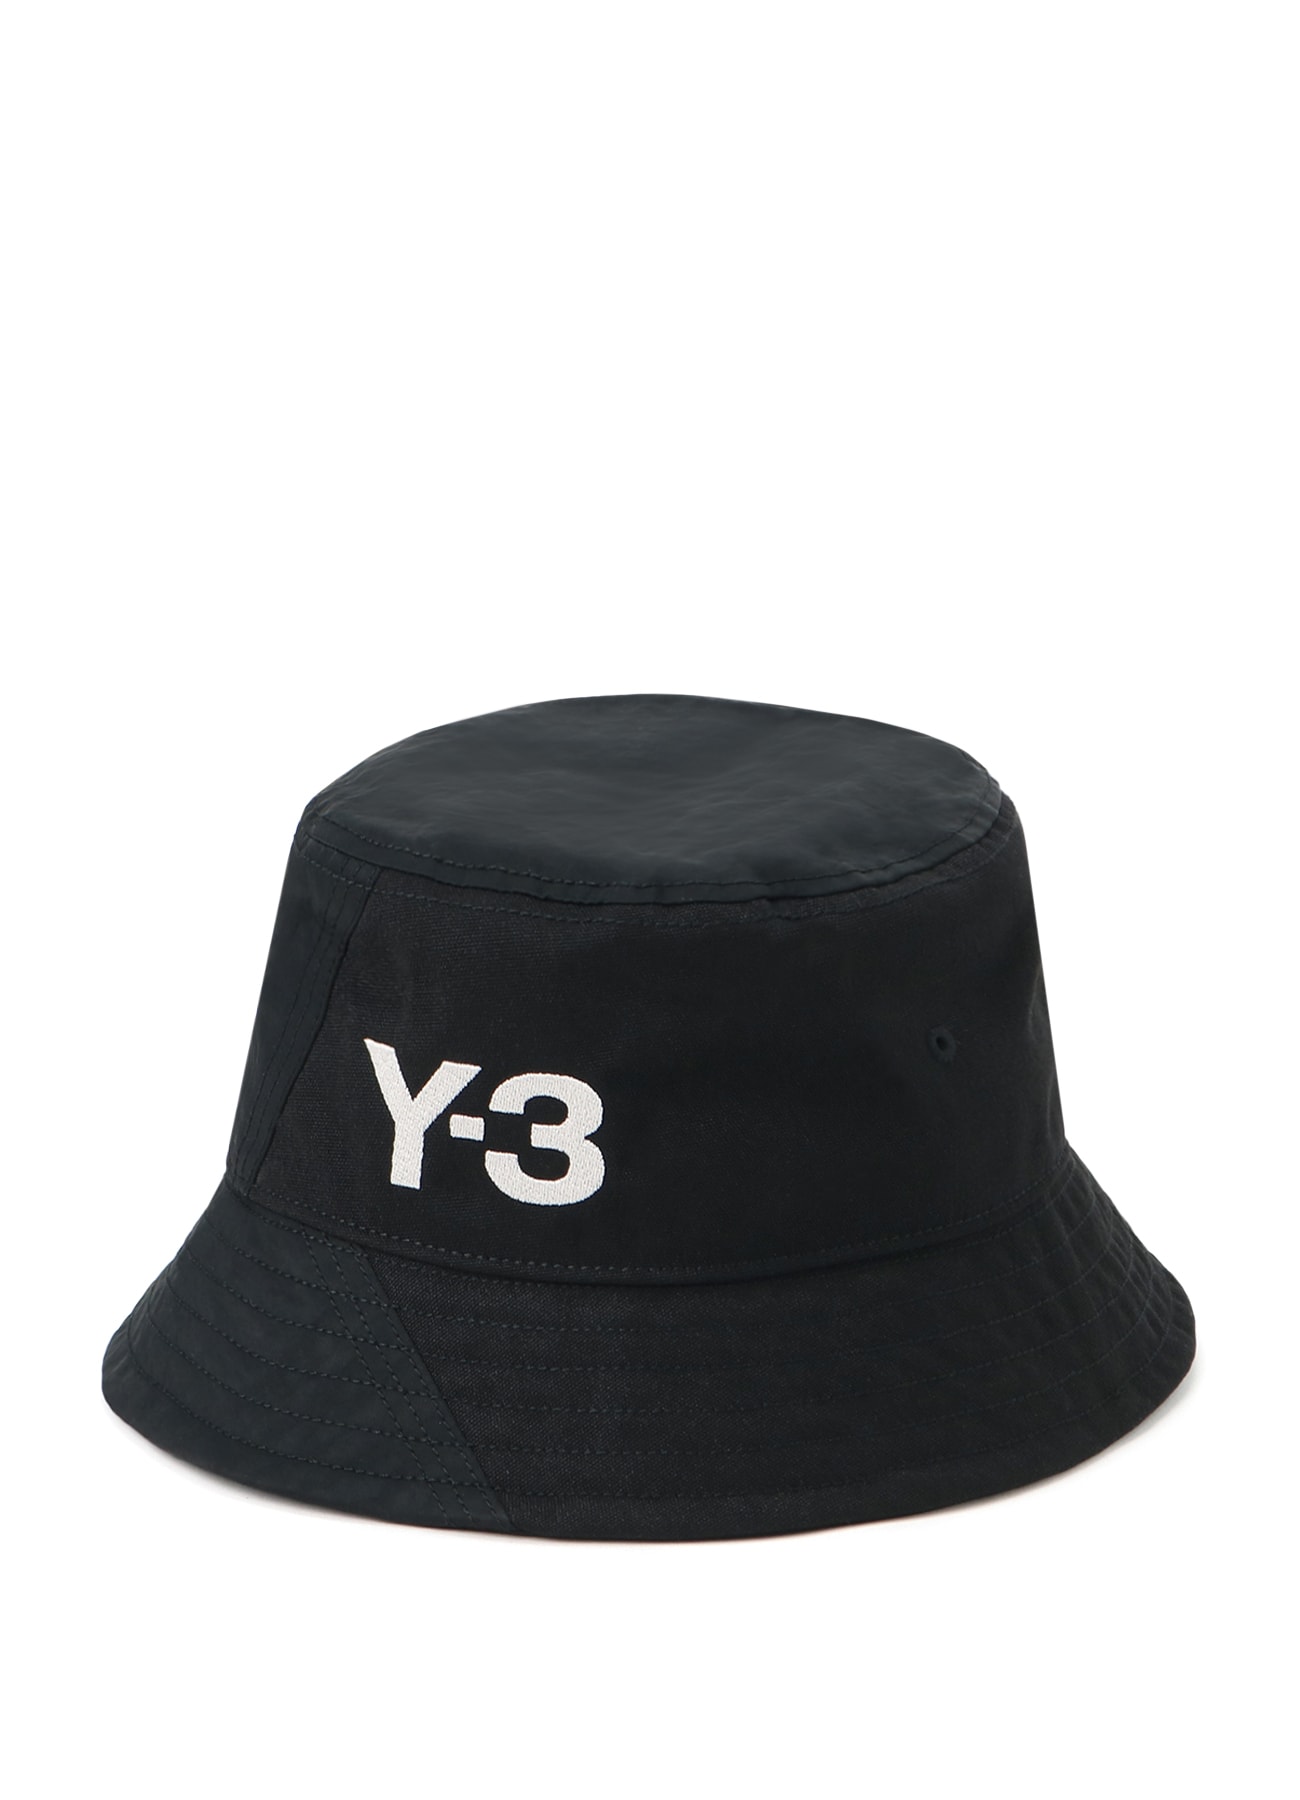 Y-3 BUCKET HAT